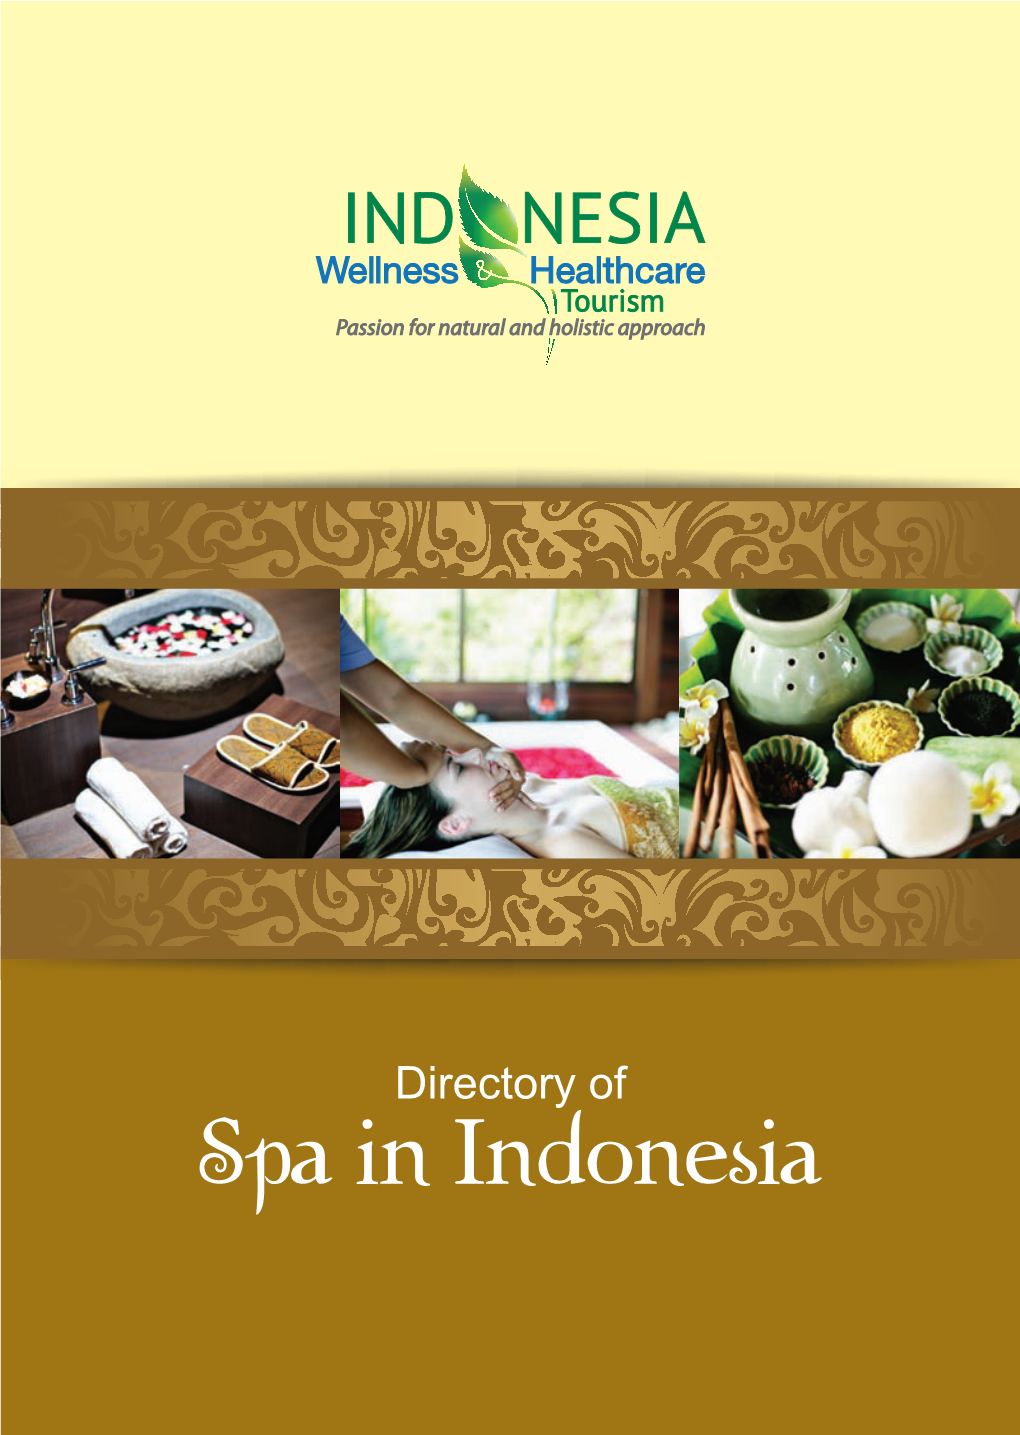 Spa in Indonesia Mustika Ratu Ratu Directory of Spa in Indonesia Content